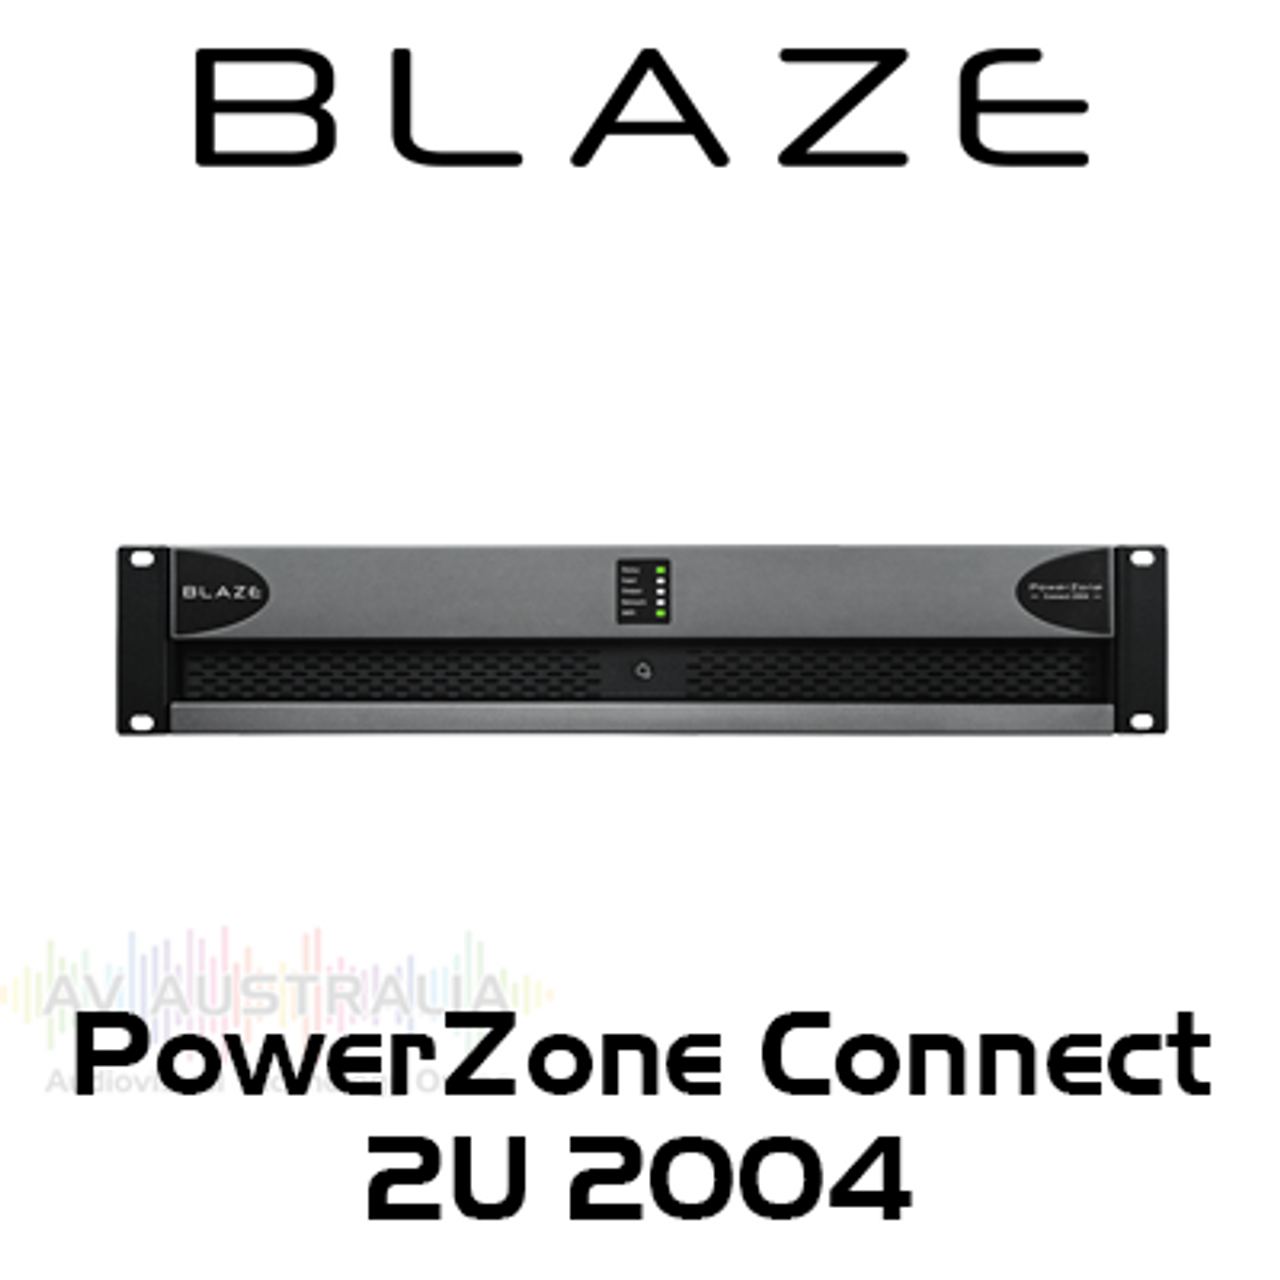 Blaze Audio PowerZone Connect 2004 4-Channel 2000W Class-D DSP Amplifier